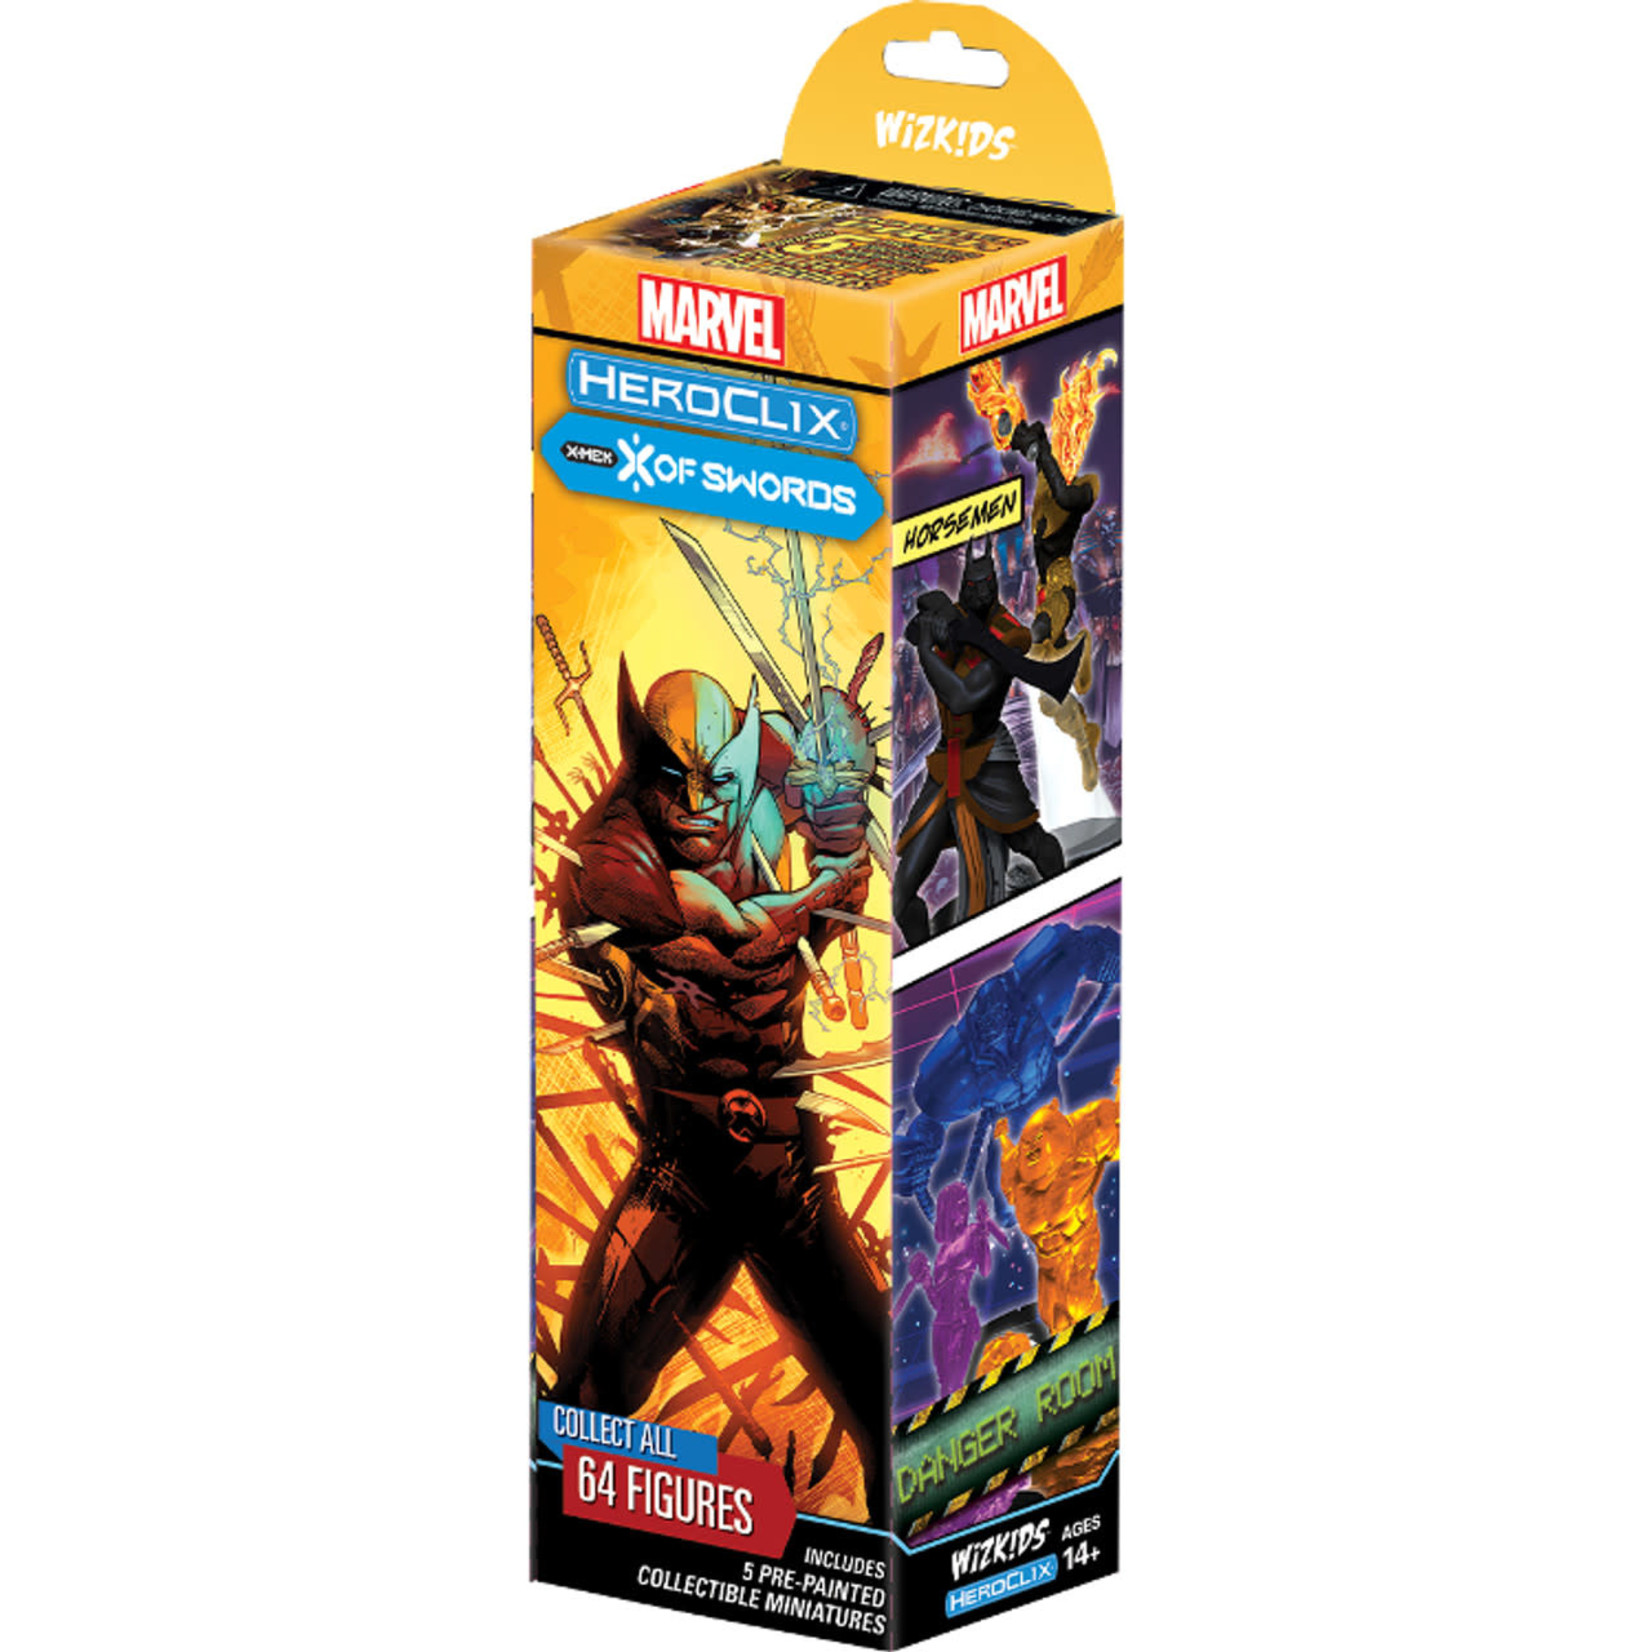 WIZKIDS/NECA Marvel HeroClix X-Men X of Swords Booster